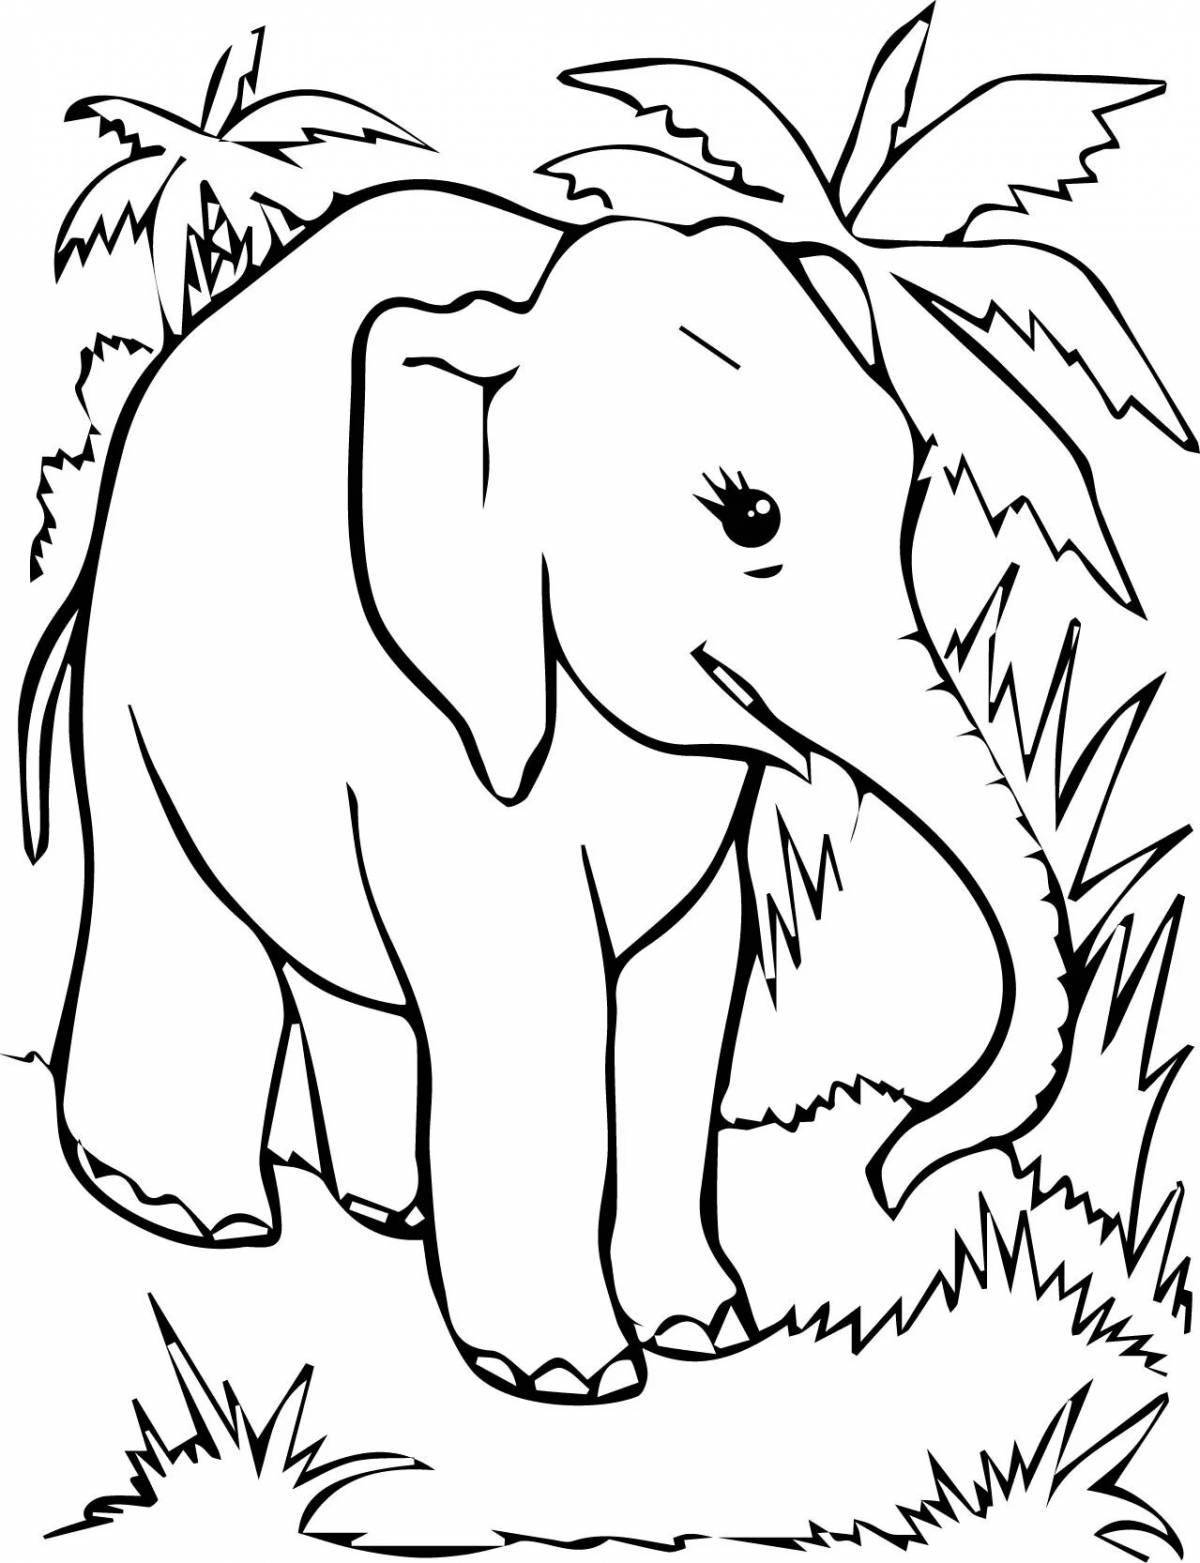 Colorful Elephant Retreat, Grade 1